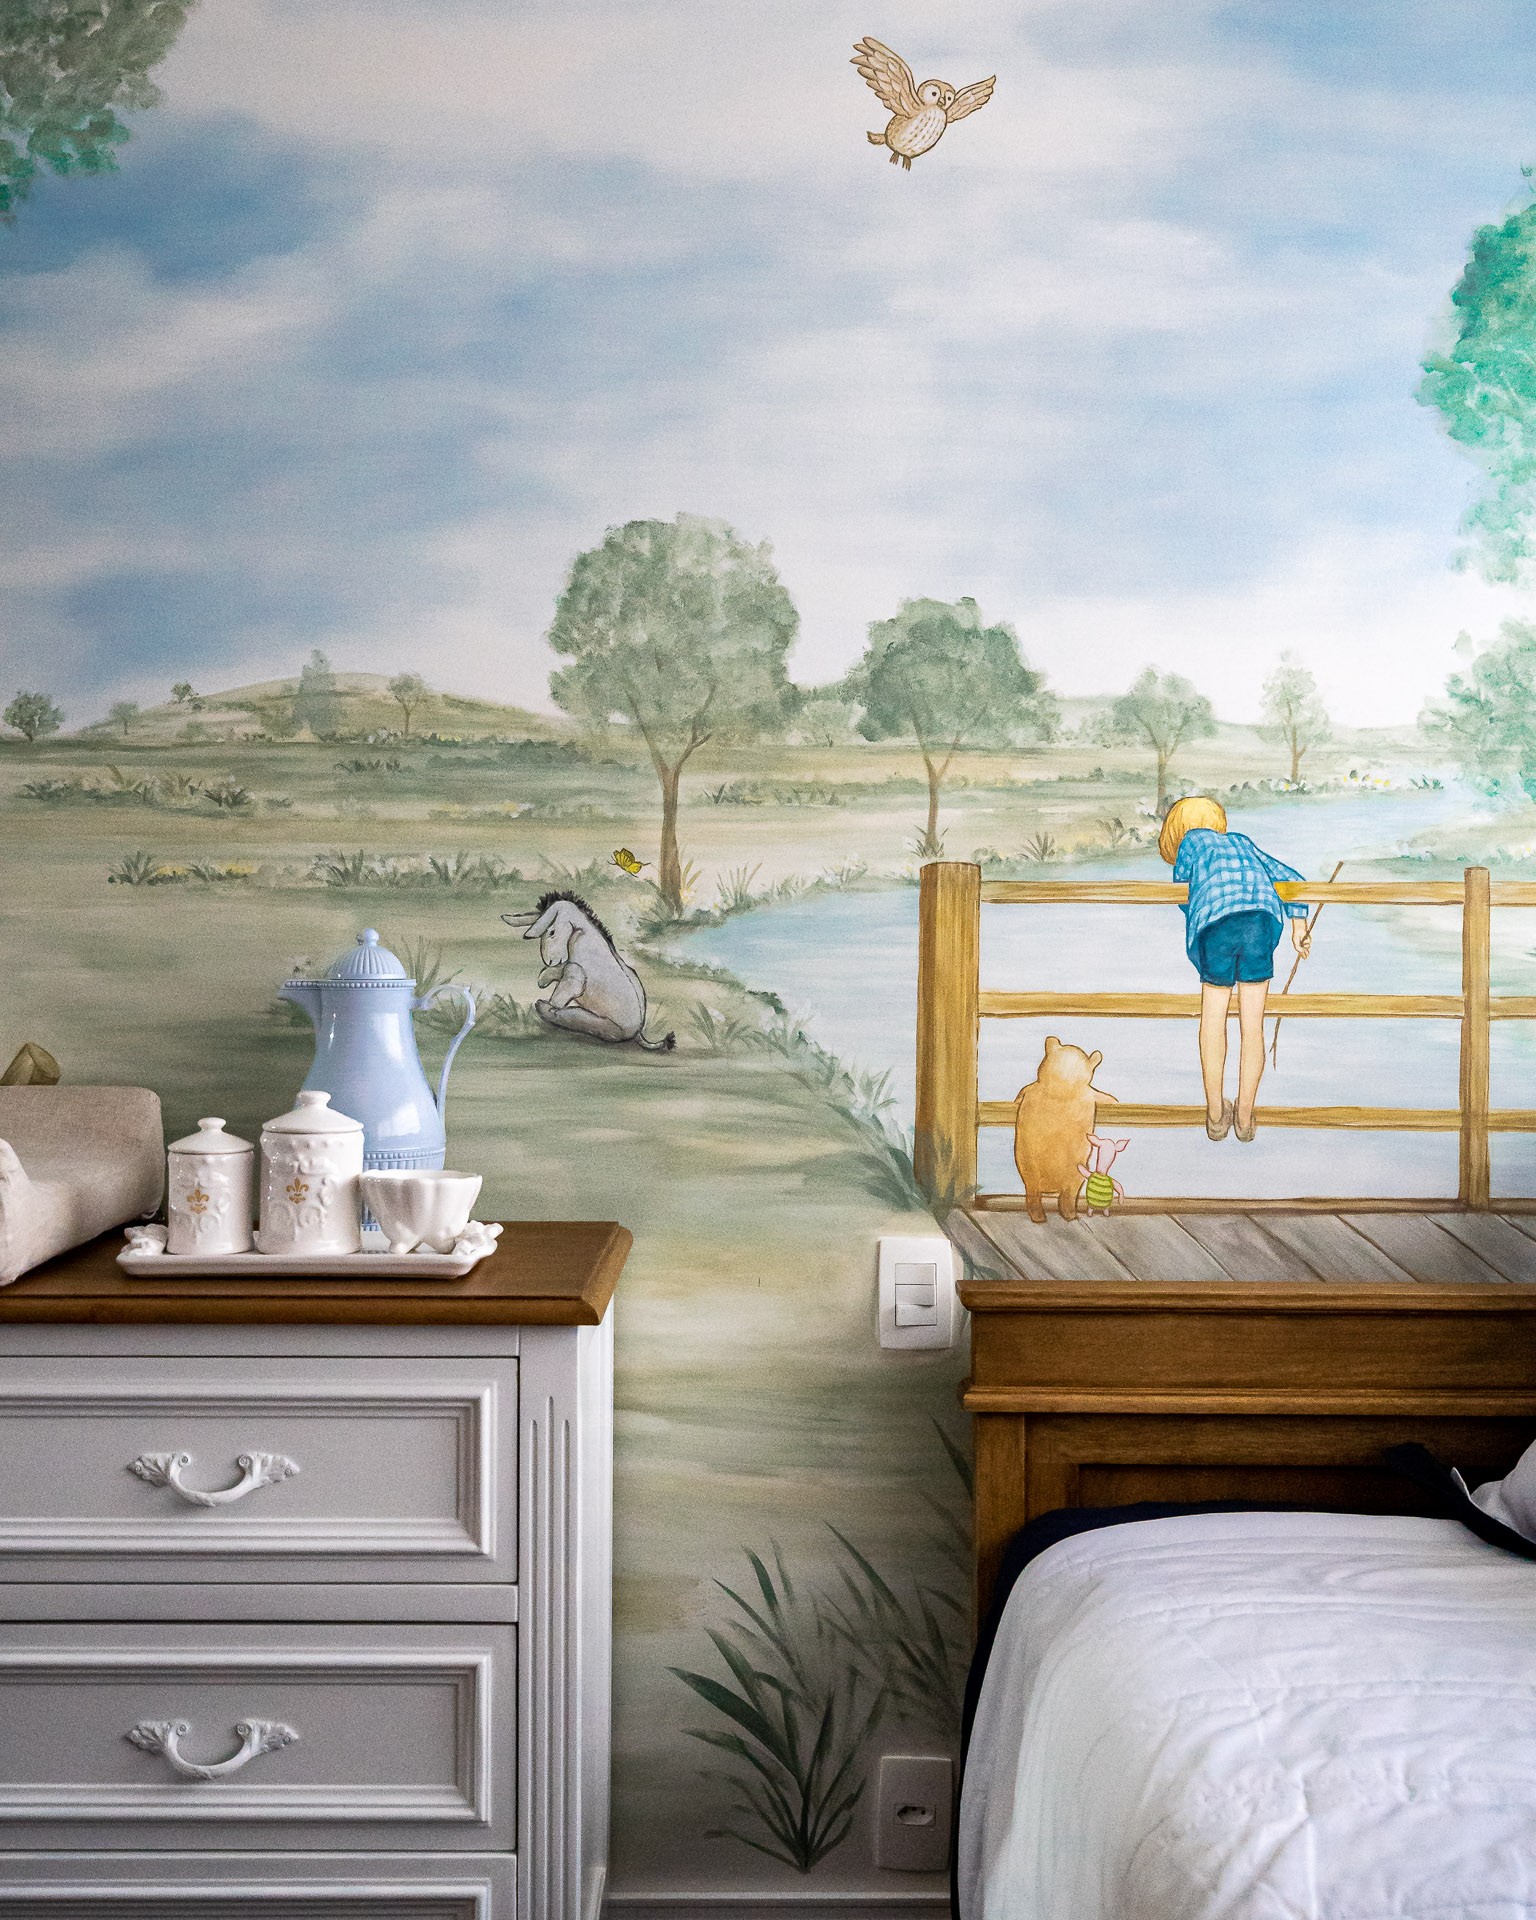 Décor do dia: parede com pintura feita à mão é o destaque deste quarto de bebê (Foto:  Flávio Dias )